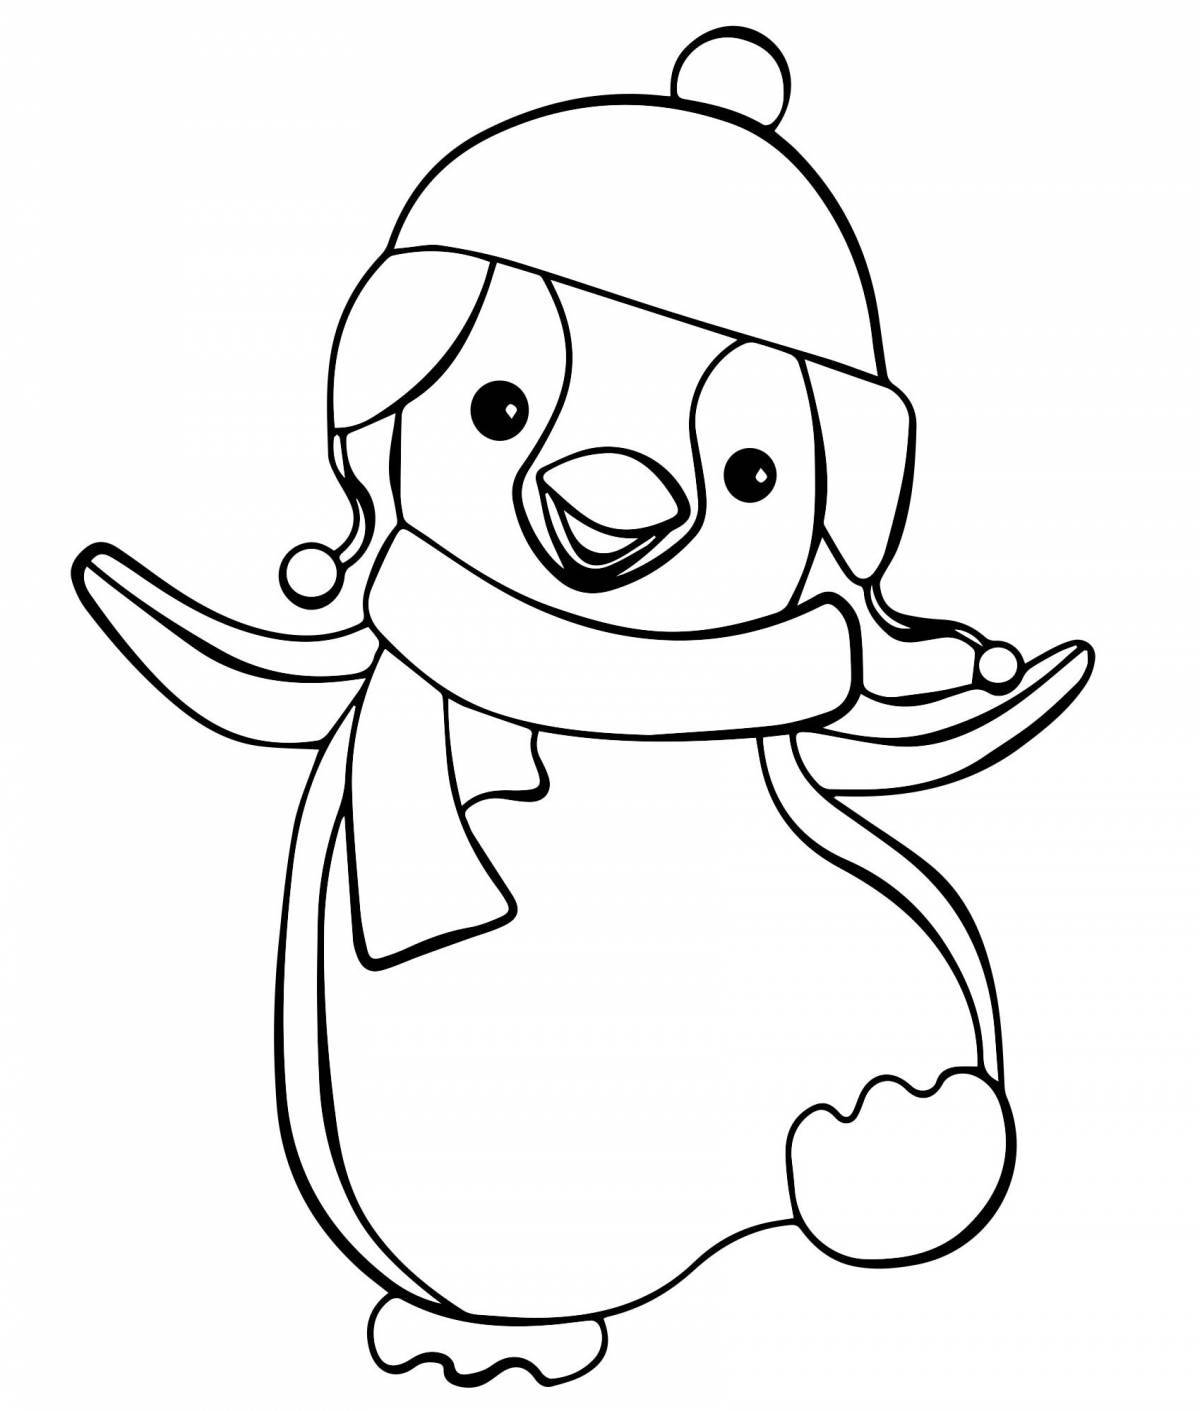 Великолепный пингвин раскраски для детей